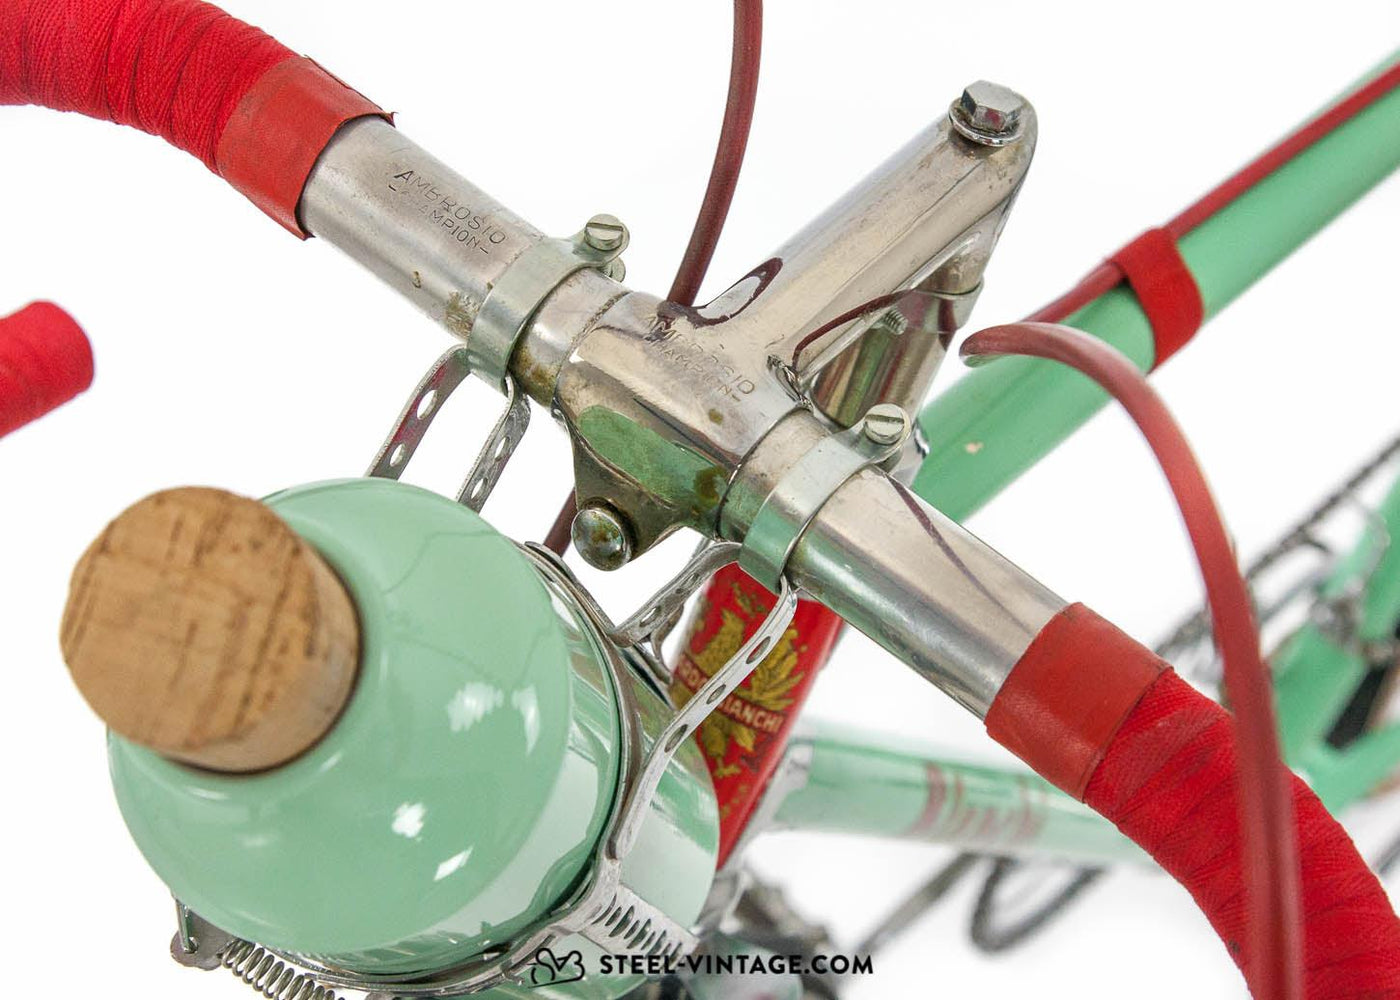 Bianchi Saetta 1937 Vintage Racing Bicycle - Steel Vintage Bikes